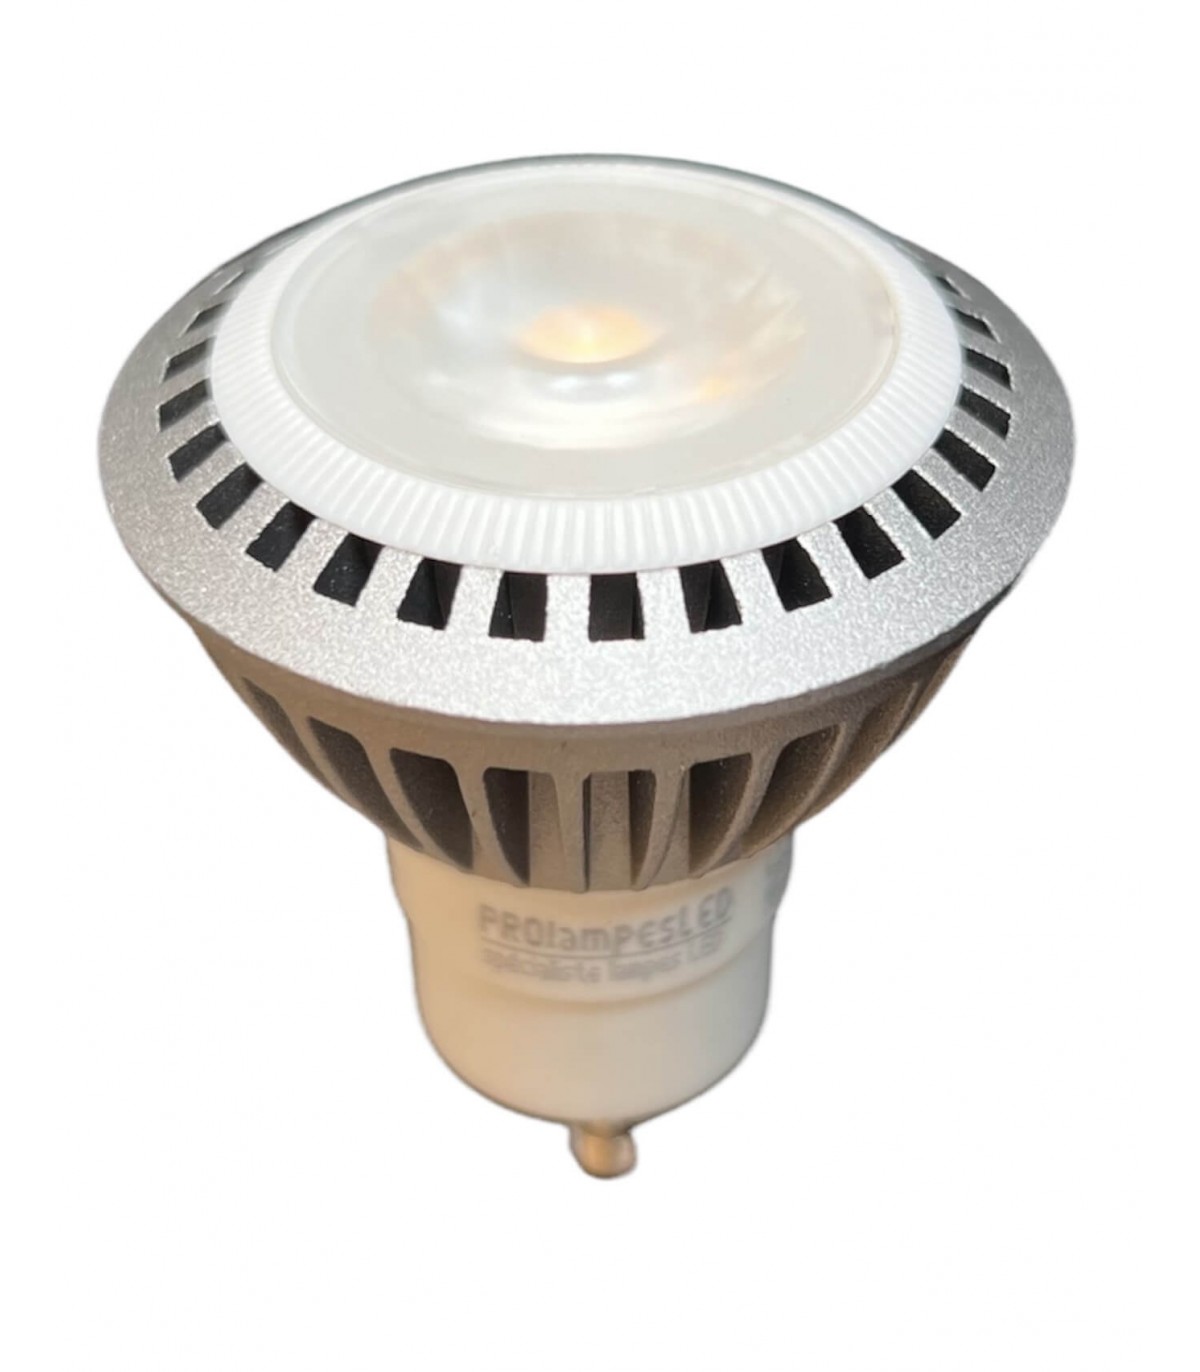 Ampoule LEDspot PAR16 7W substitut 50W 540 lumens blanc chaud 2700K GU10